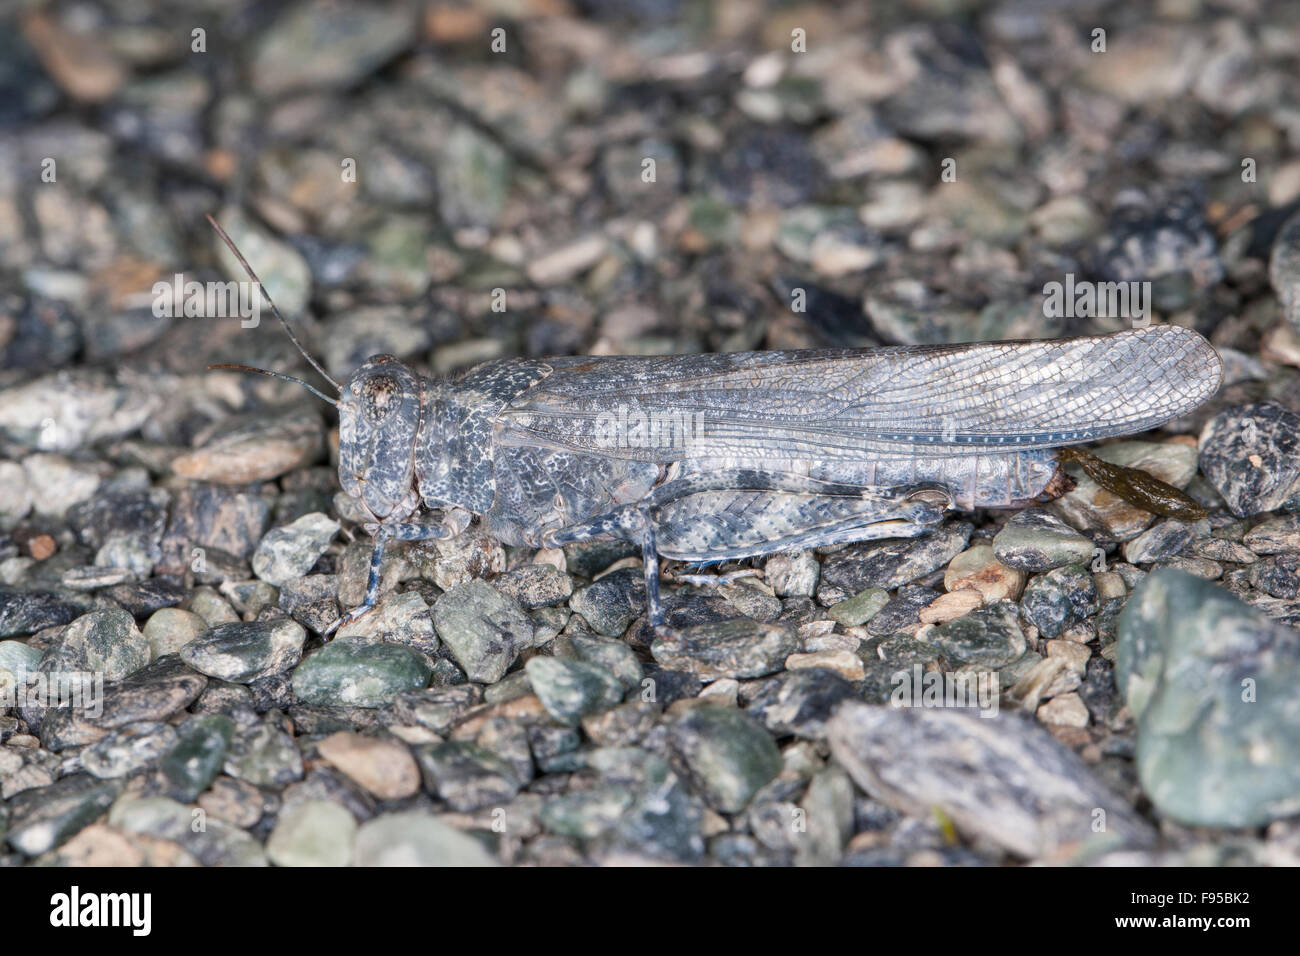 Blue-winged Grasshopper, Camouflage, Sandschrecke, perfekte Tarnung auf dem Untergrund, Sphingonotus corsicus, Korsika, Corsica Stock Photo